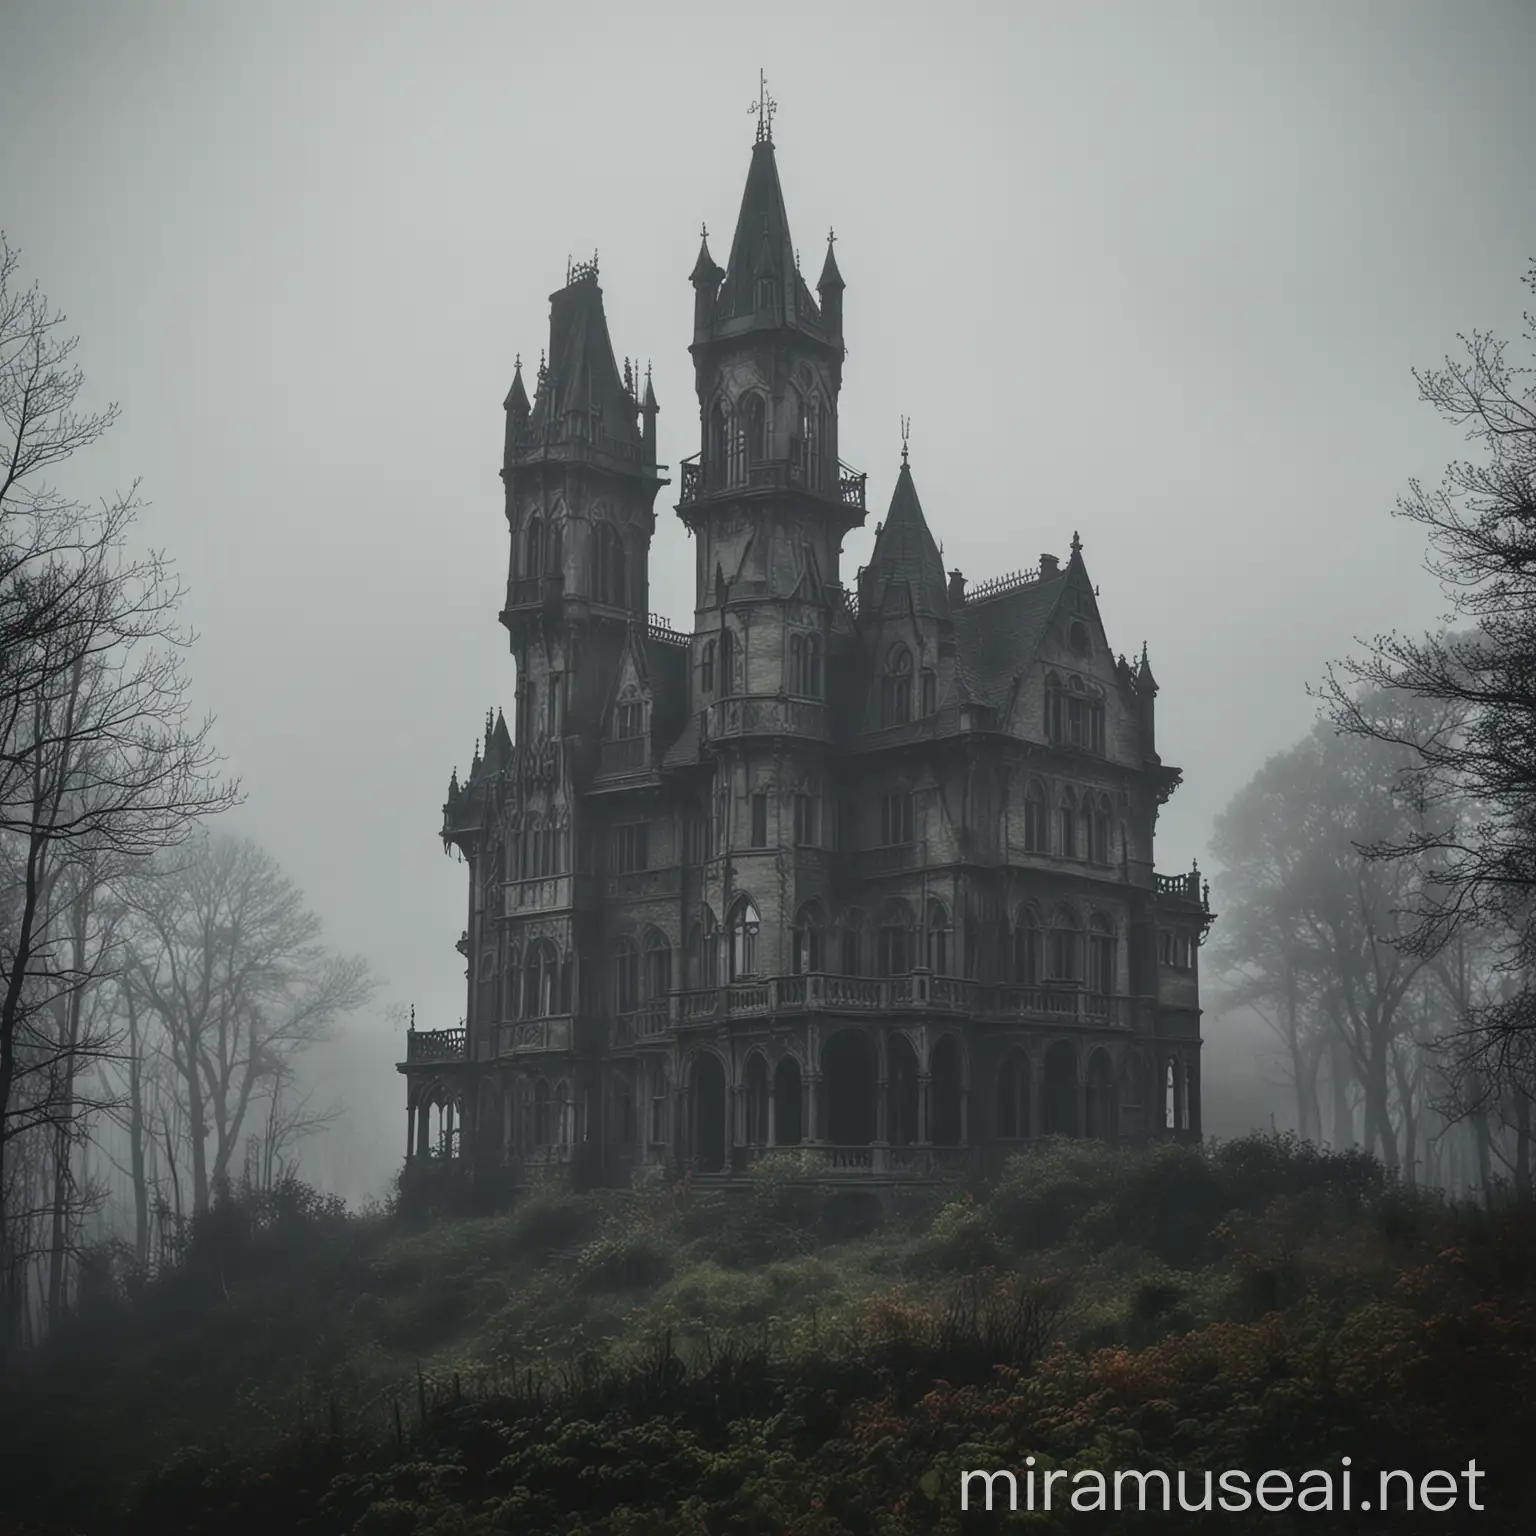 : Una mansión gótica imponente en lo alto de una colina, rodeada de densos bosques y envuelta en una niebla perpetua. La mansión tiene torres altas y ventanas oscuras, con una atmósfera inquietante.